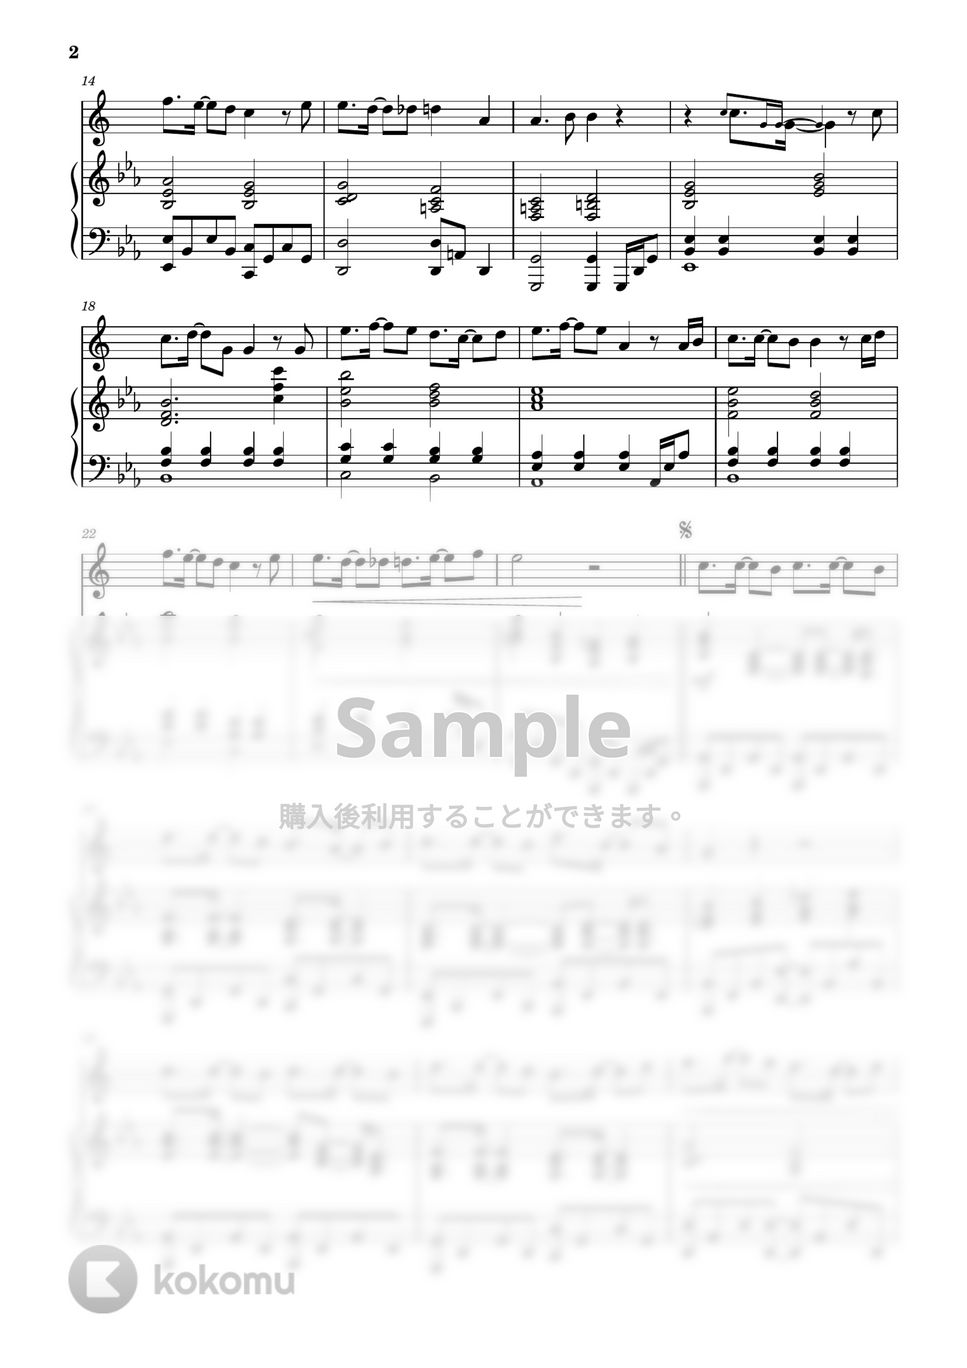 新世紀エヴァンゲリオン - 残酷な天使のテーゼ / 高橋洋子 (in E♭&ピアノ伴奏) by PiaFlu